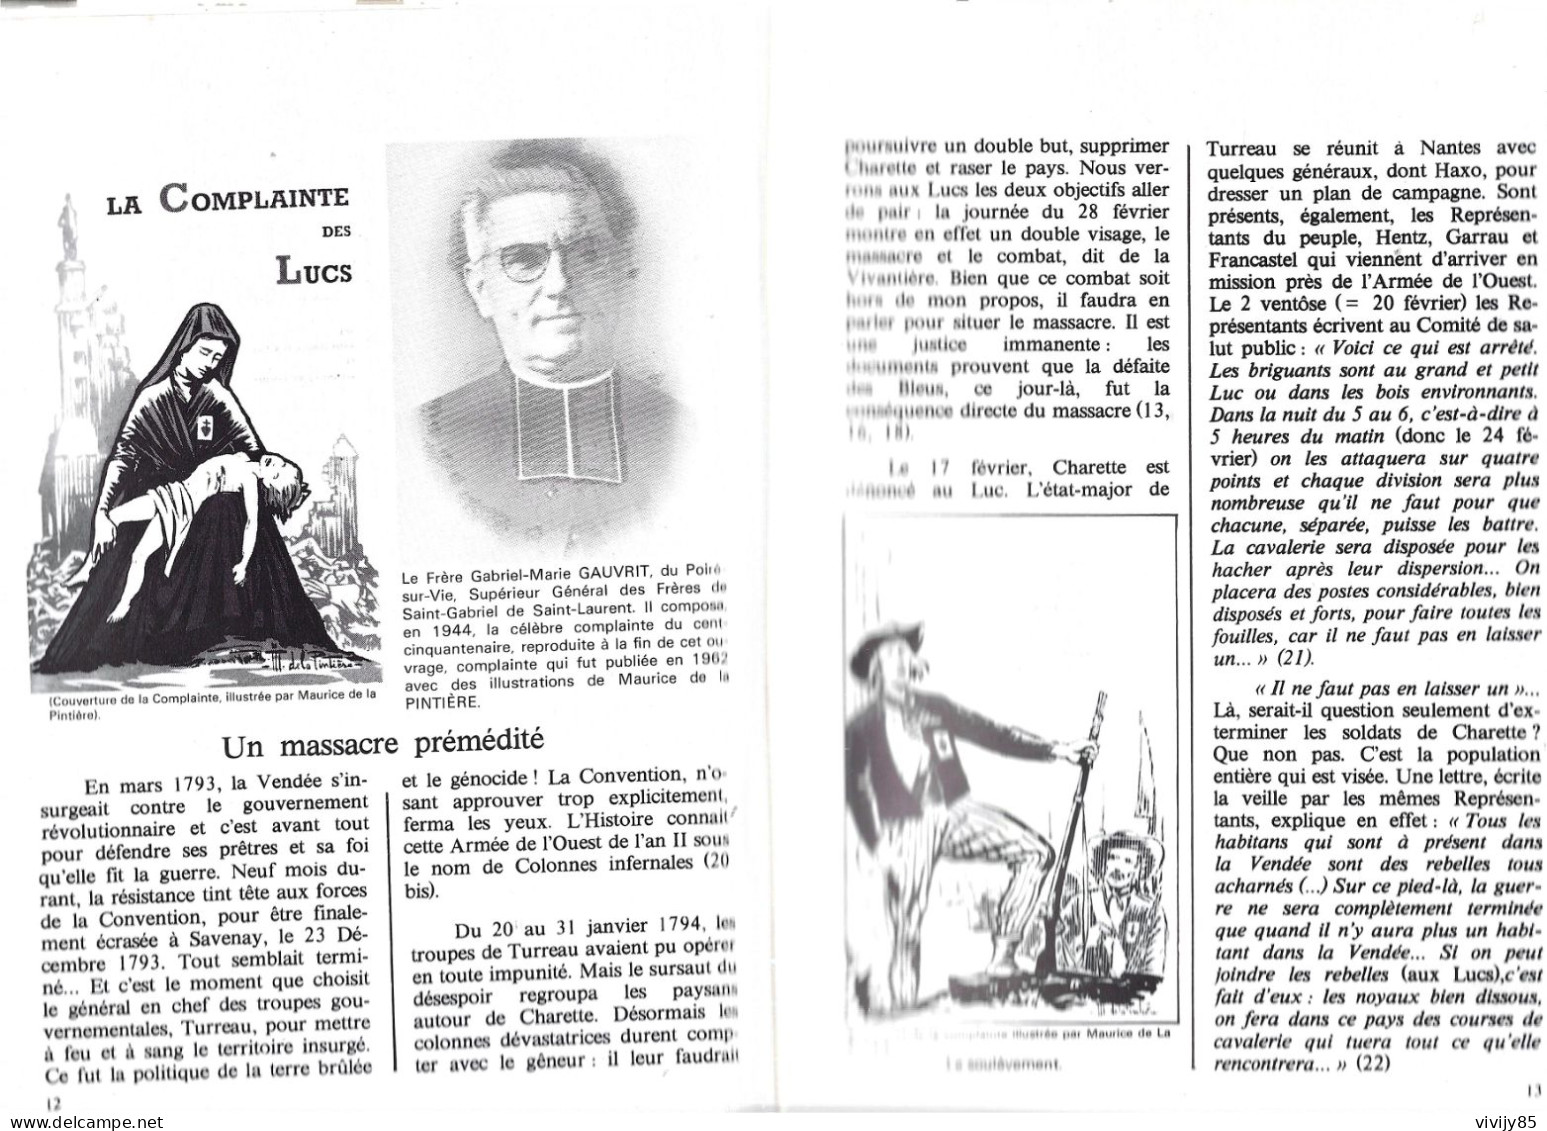 85 - Livre Illustré De 167 Pages " Le Massacre Des LUCS SUR BOULOGNE " Et Le Martyrologe Du Curé Barbedette - Pays De Loire